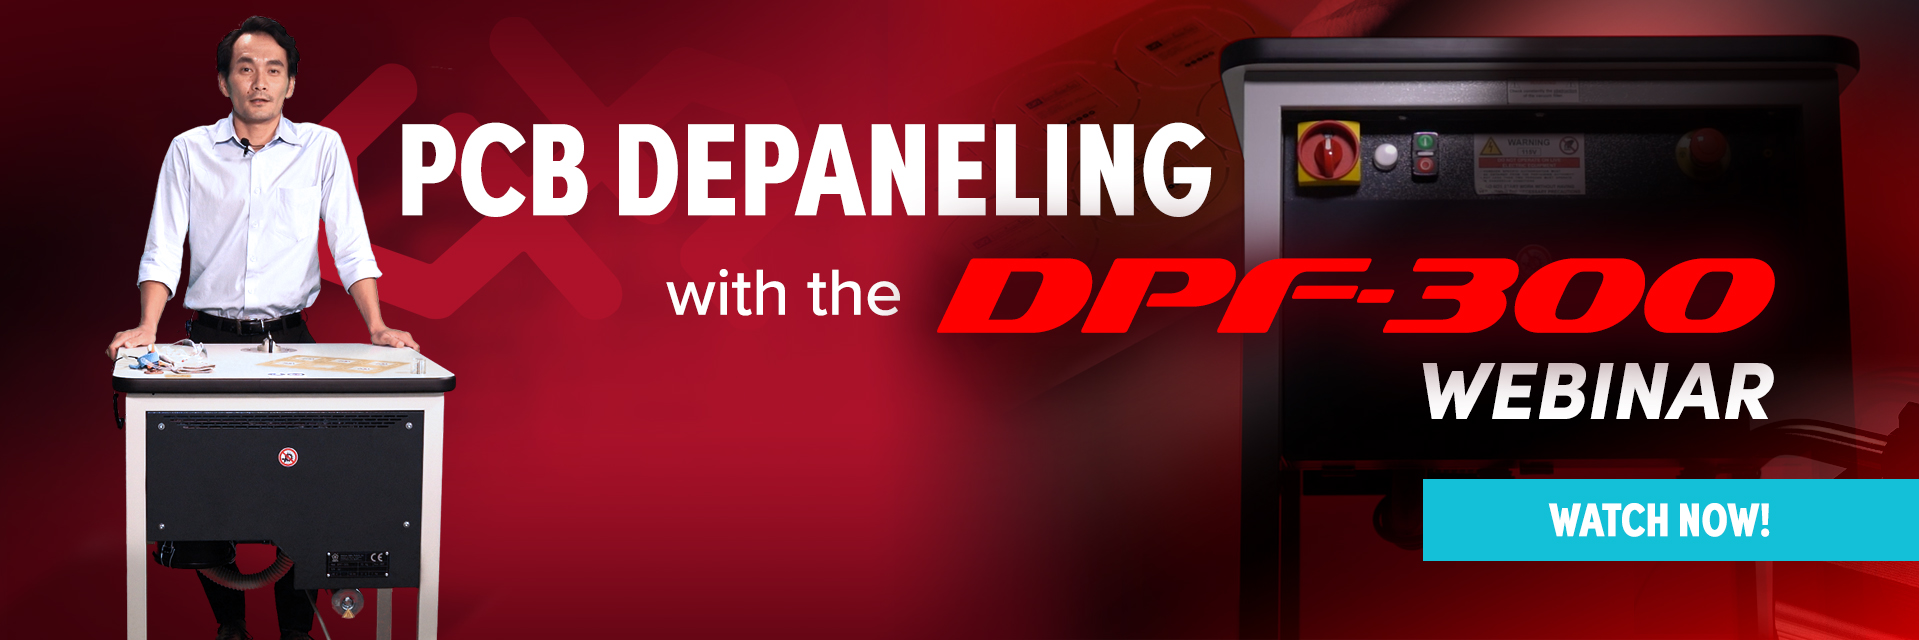 Watch the DPF-300 Webinar Now!